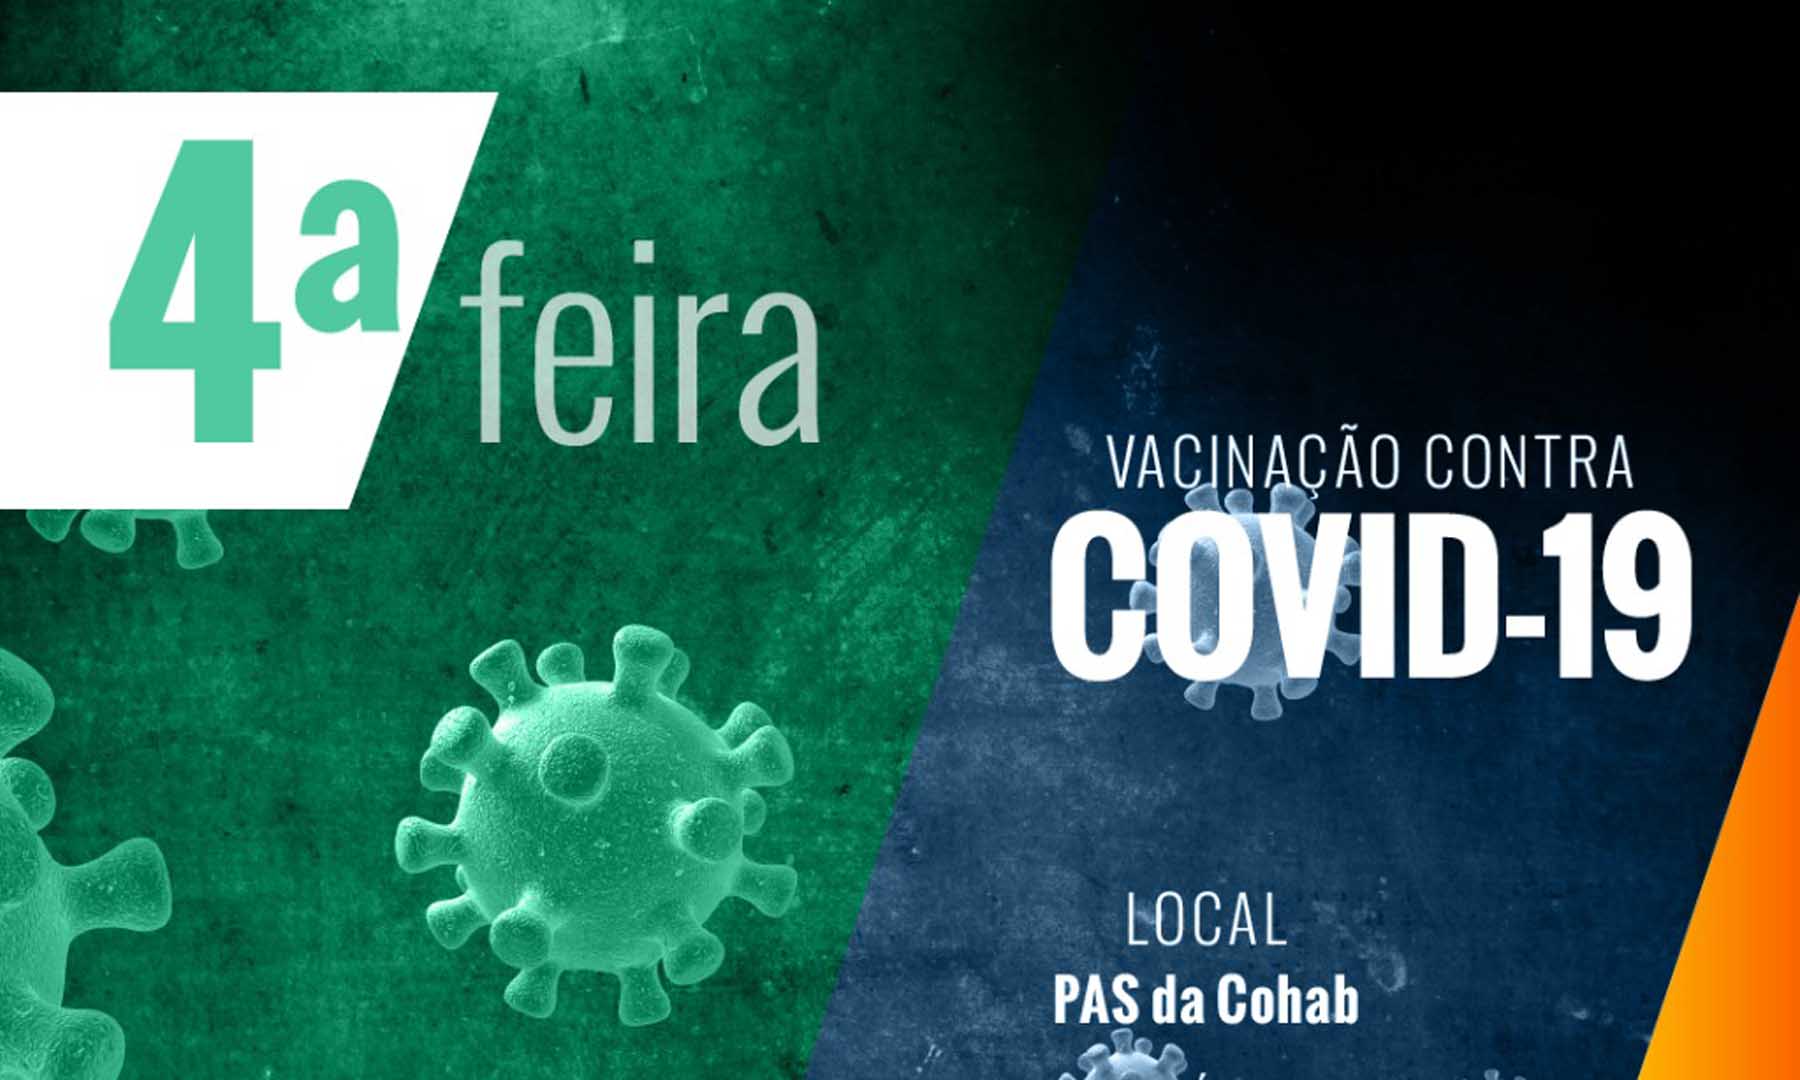 VACINAÇÃO COVID-19 - DIA 01 DE FEVEREIRO